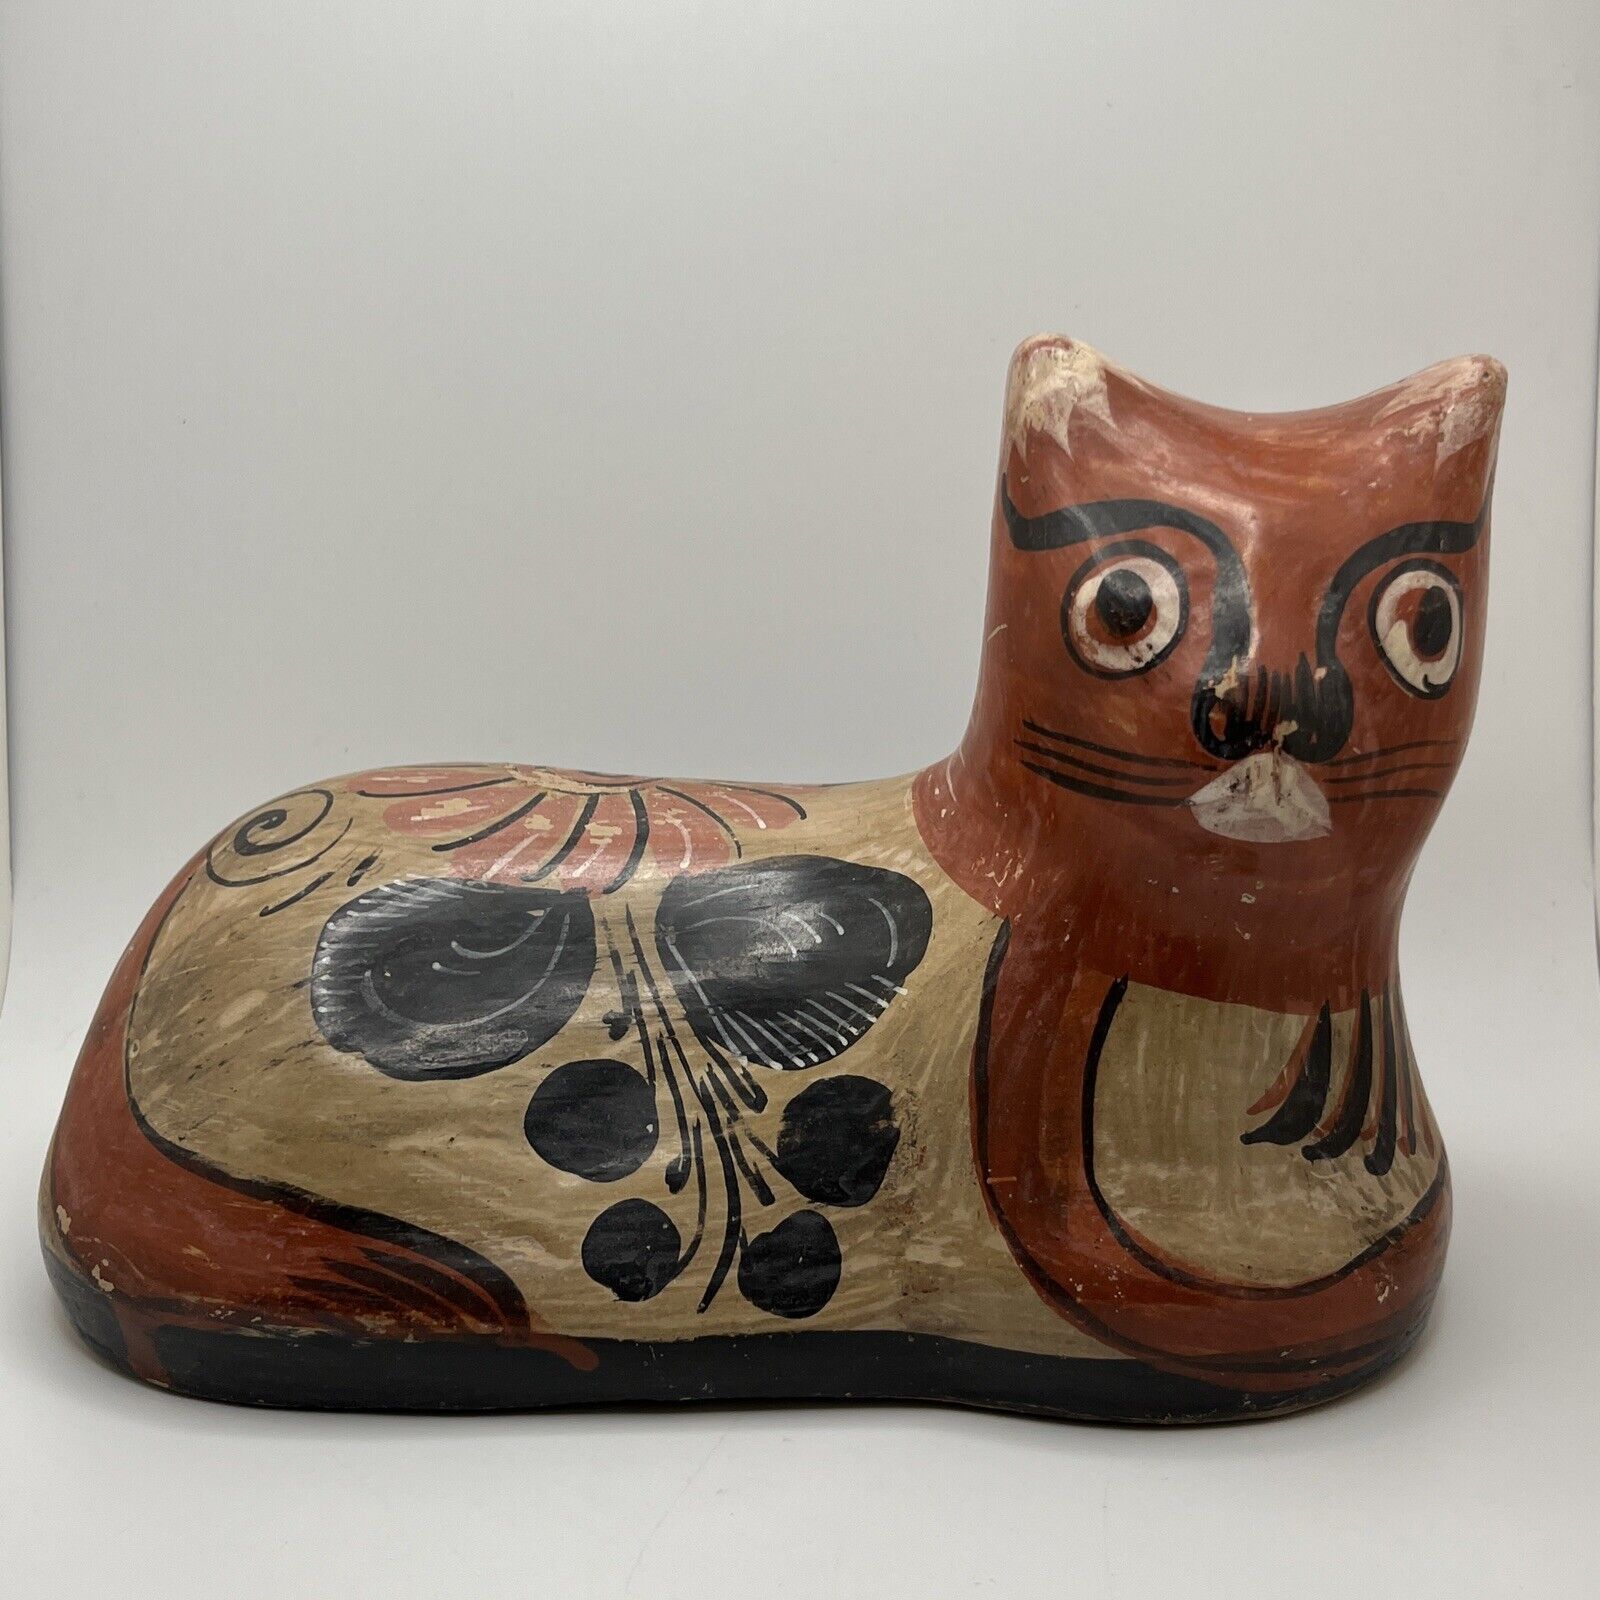 Vintage Mexican Folk Art Ceramic Cat - Tonala Mexican Folk Art Pottery Lying Cat